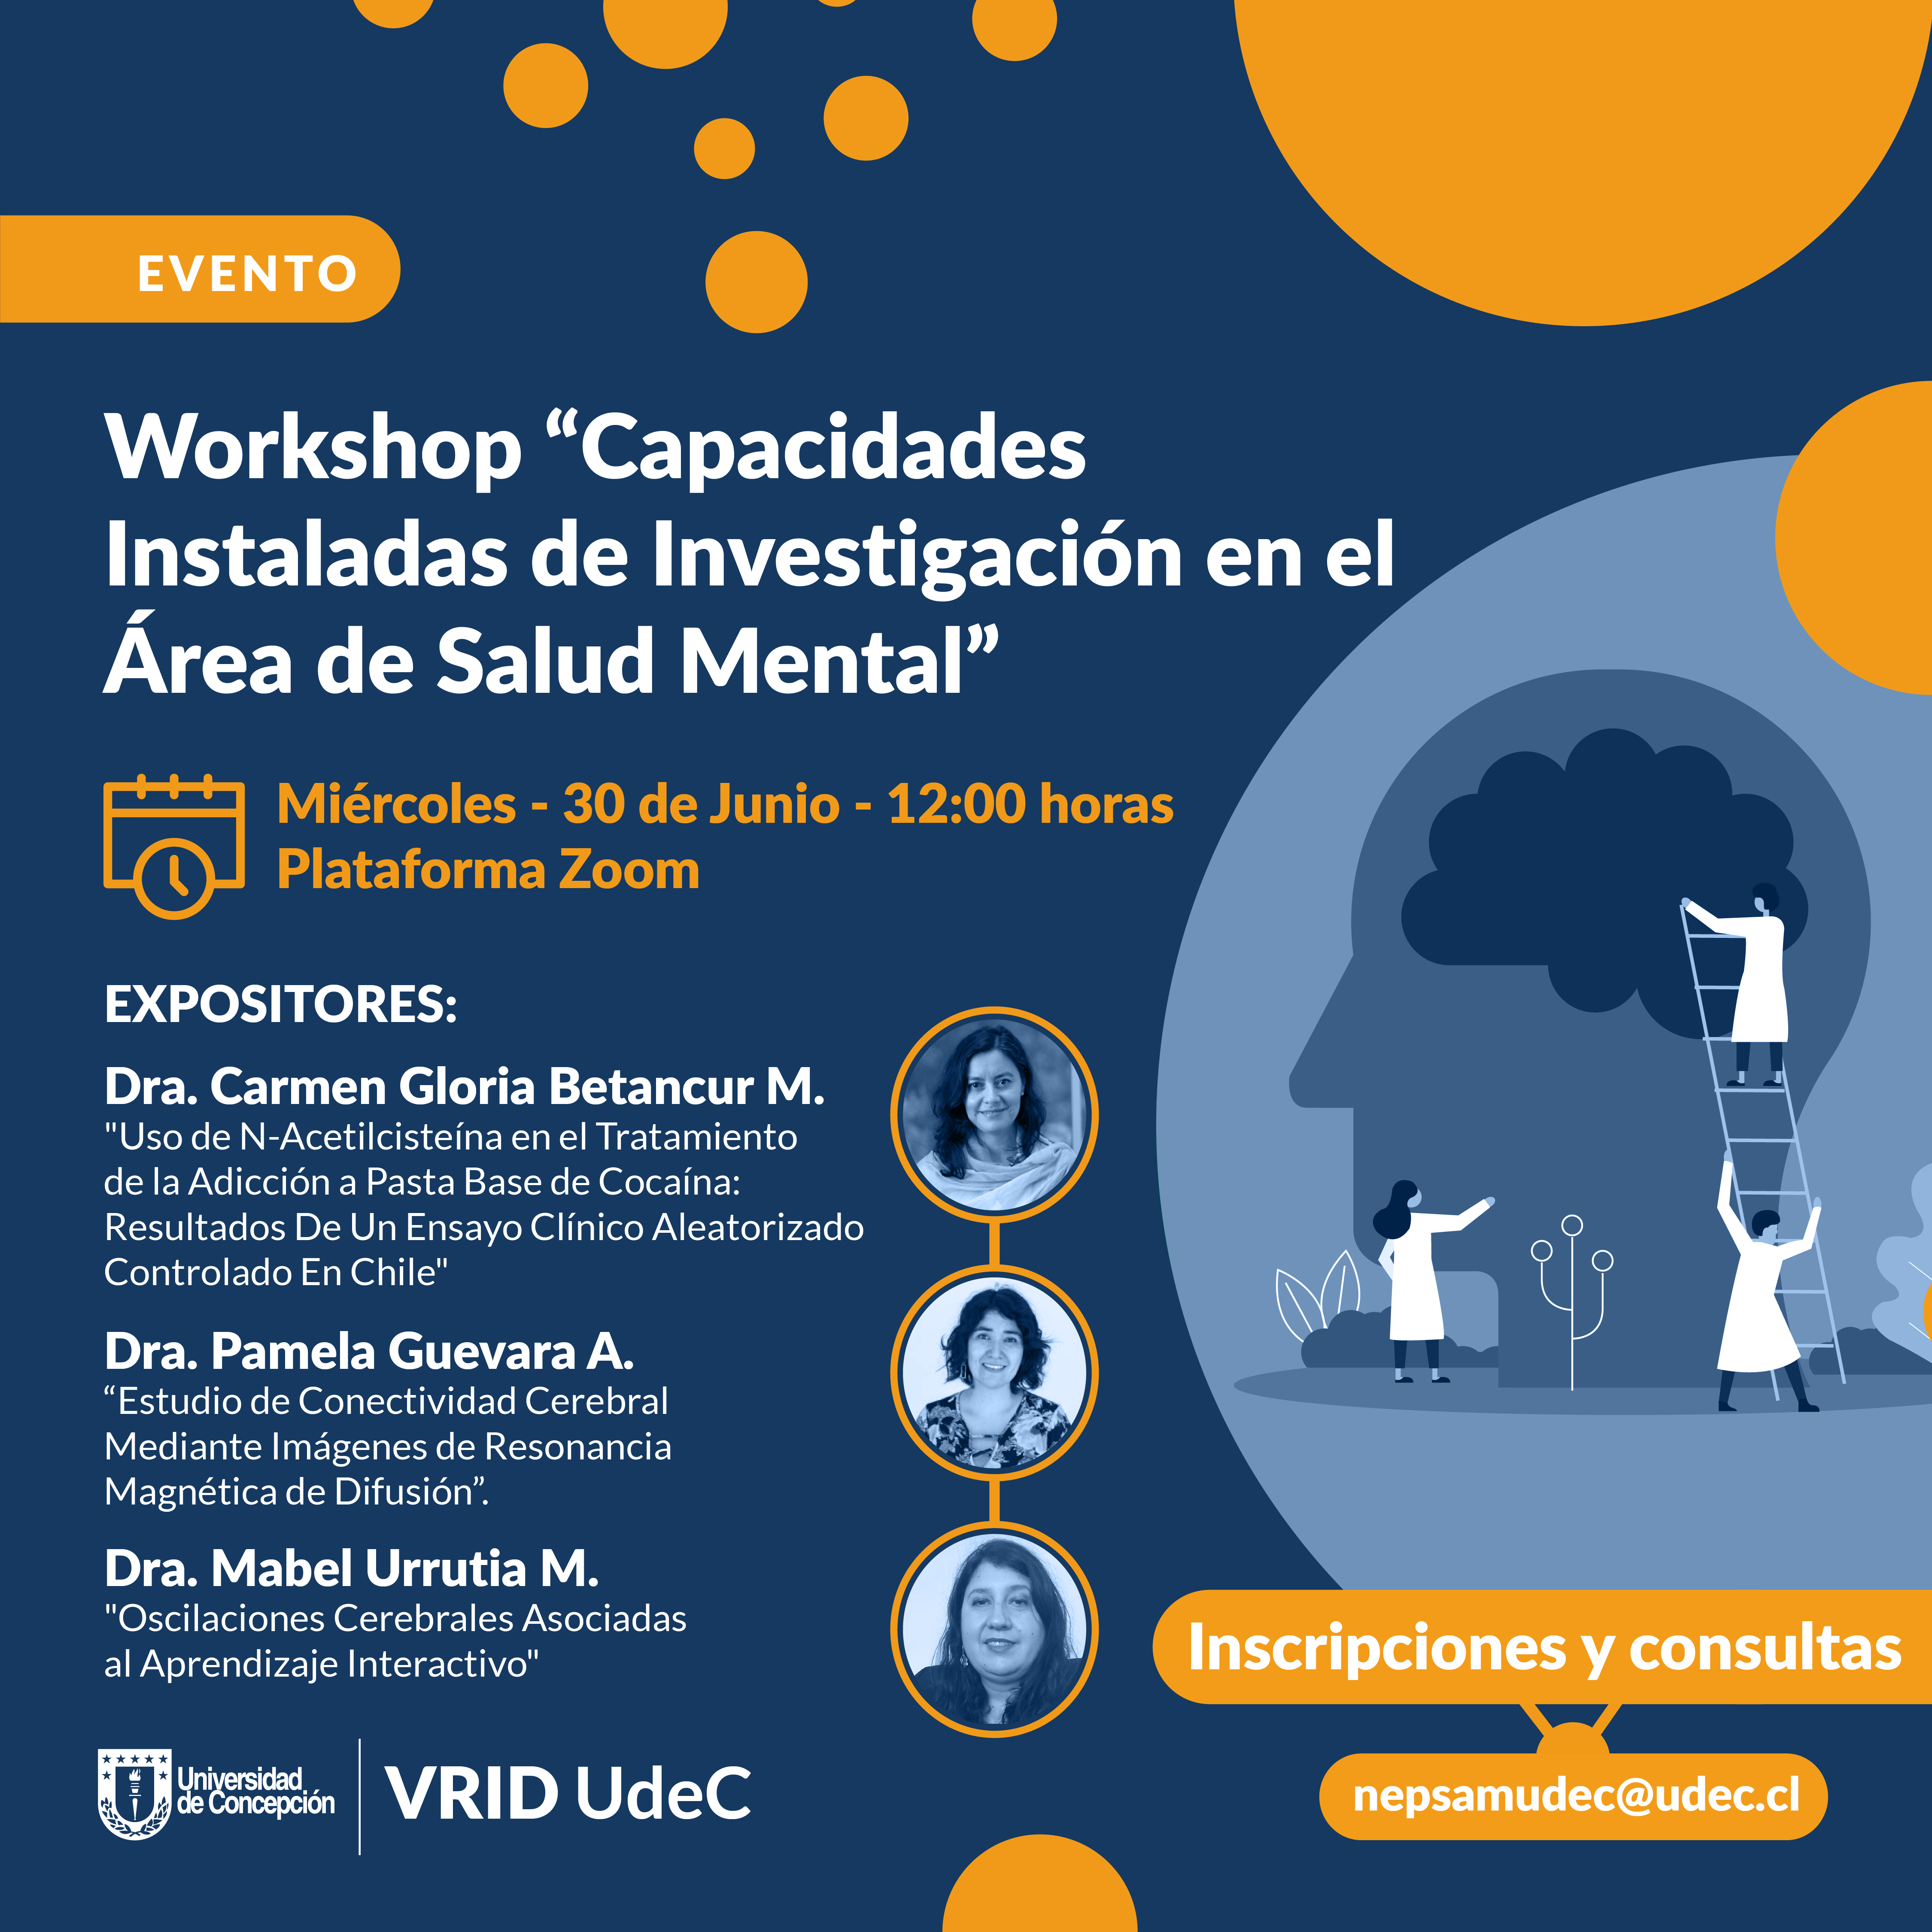 Workshop "Capacidades Instaladas de Investigación en el Área de Salud Mental"